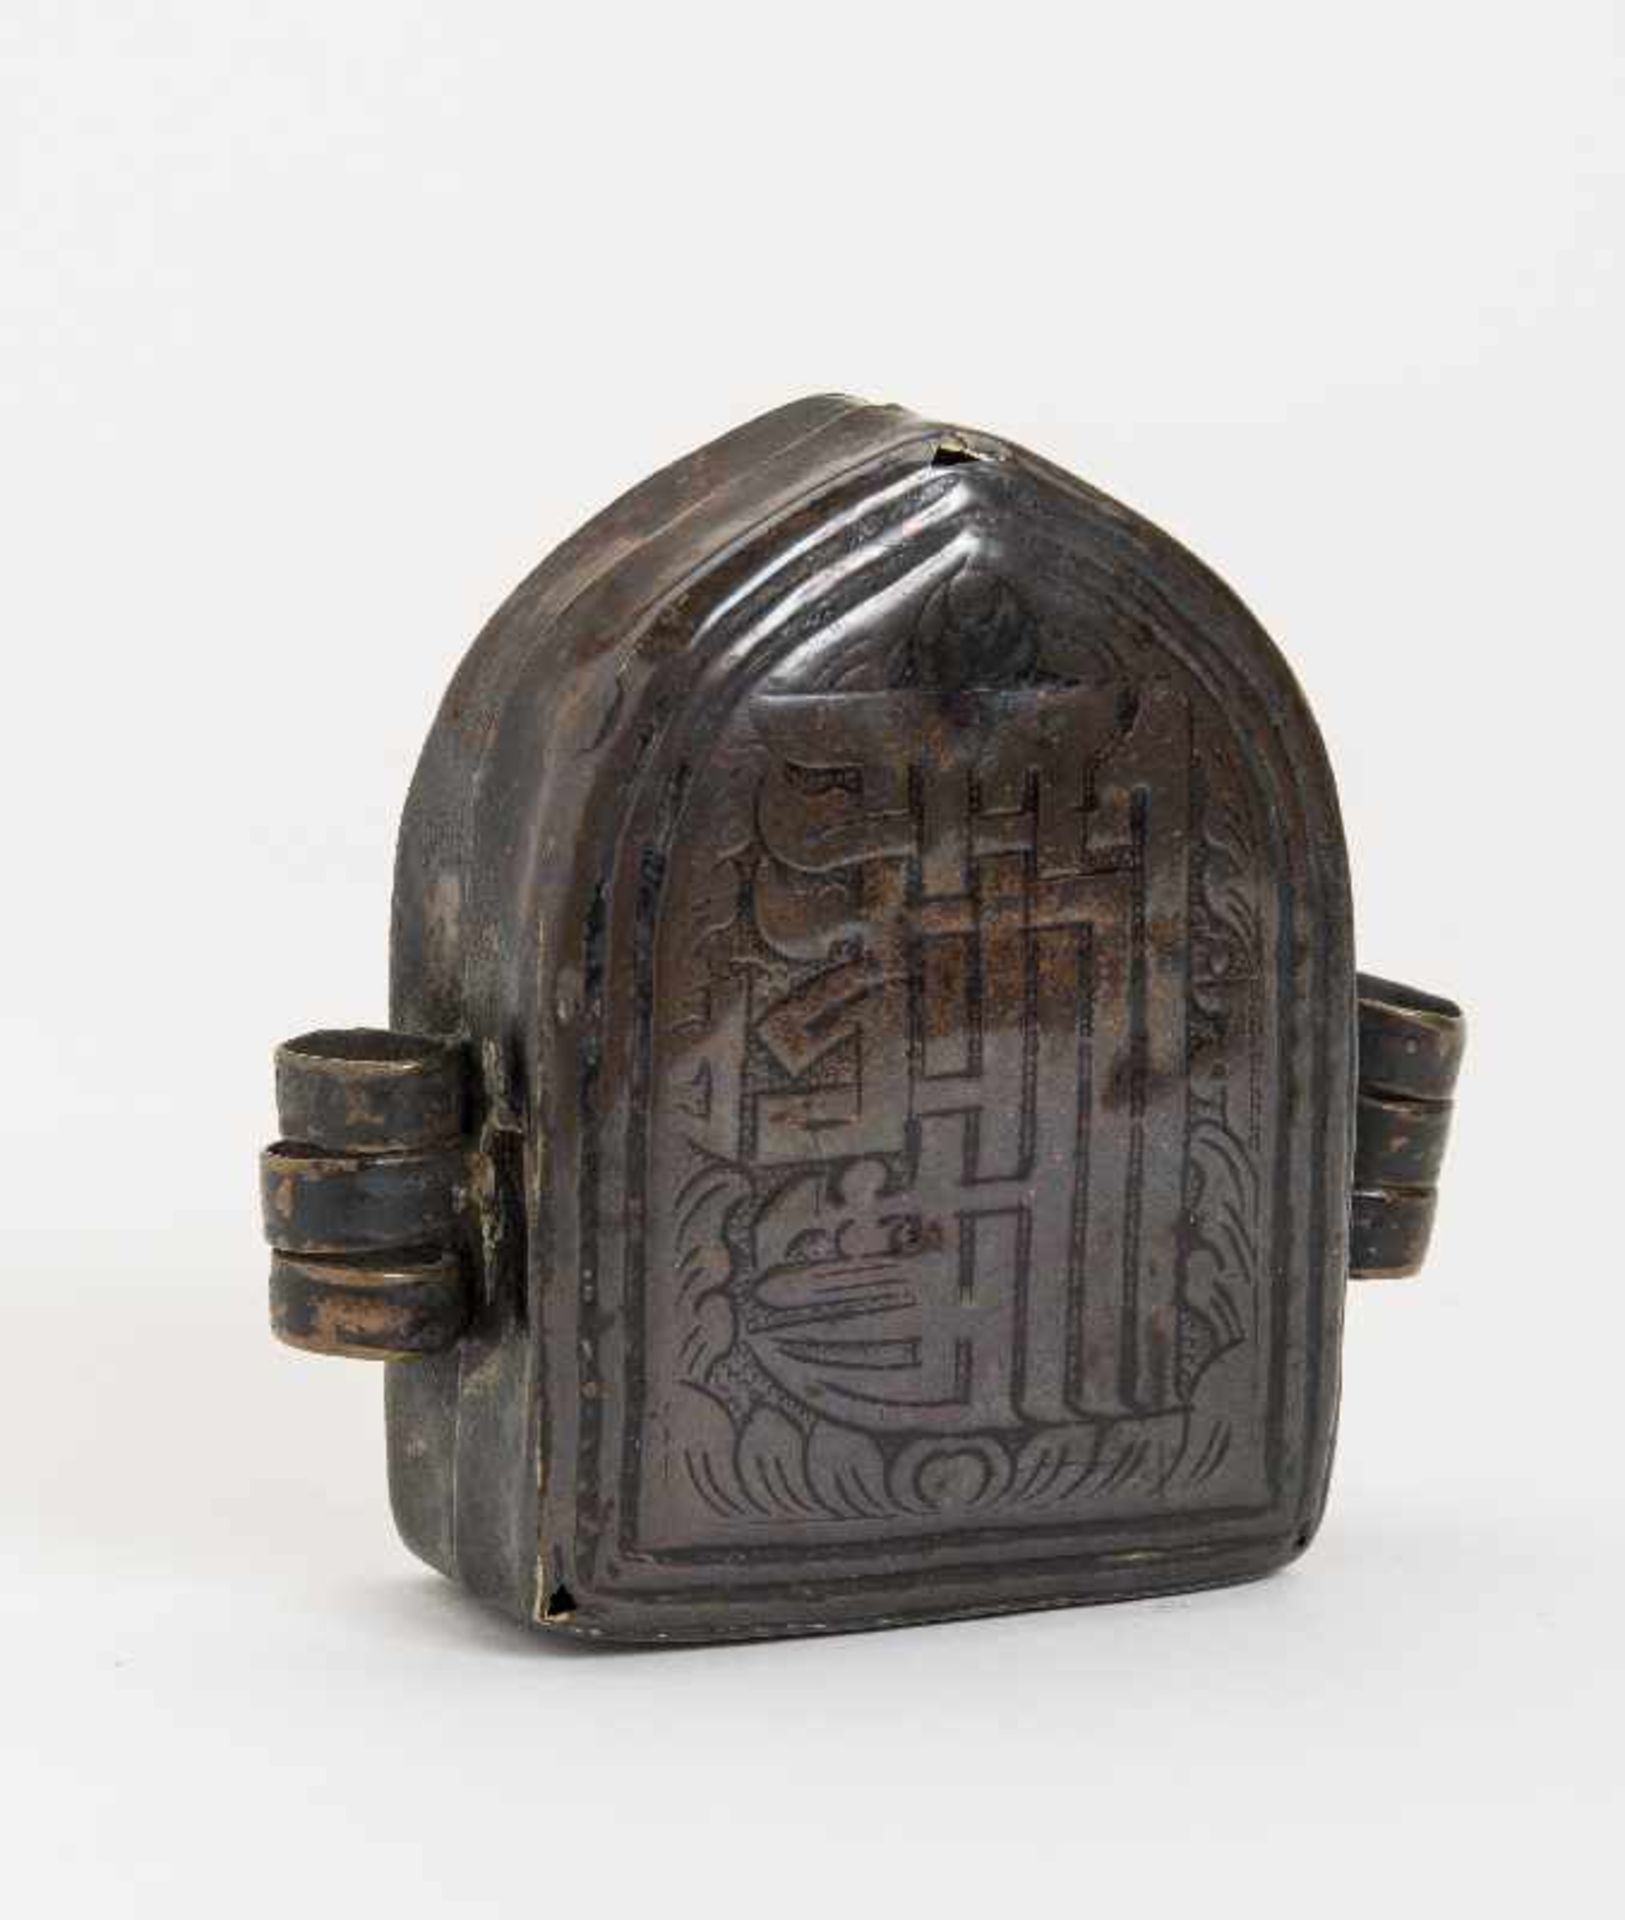 REISEGAU Kupferbronze. Tibet, 19. Jh. Ein Amulett-Behälter Gau, der auf Reisen mitgenommen wurde und